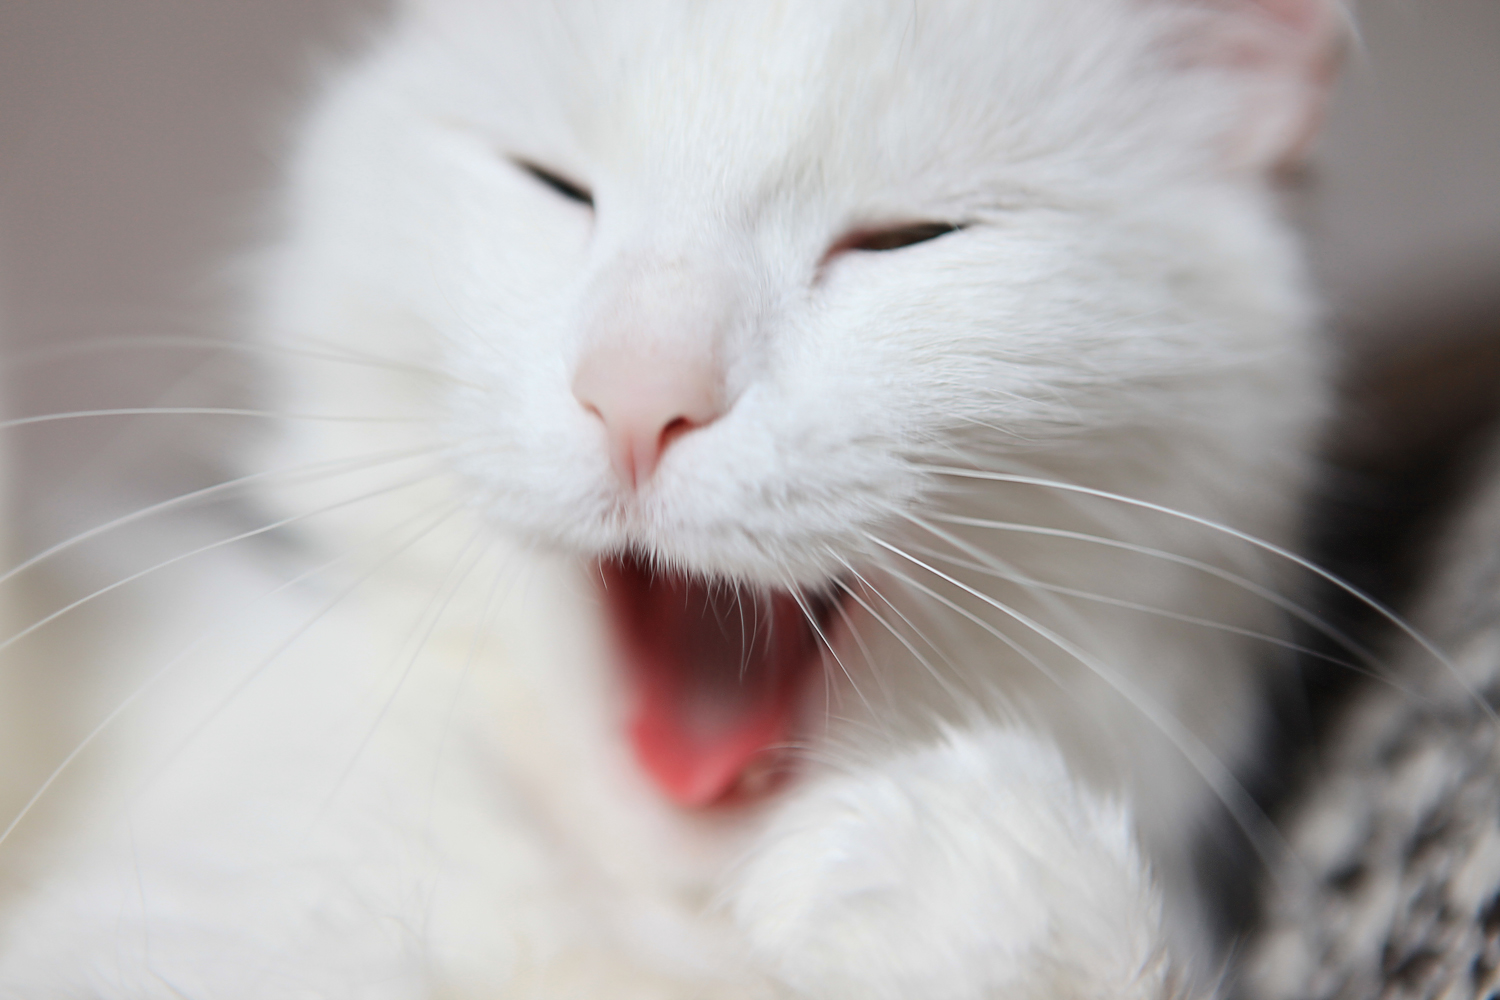 Yawning cat photo